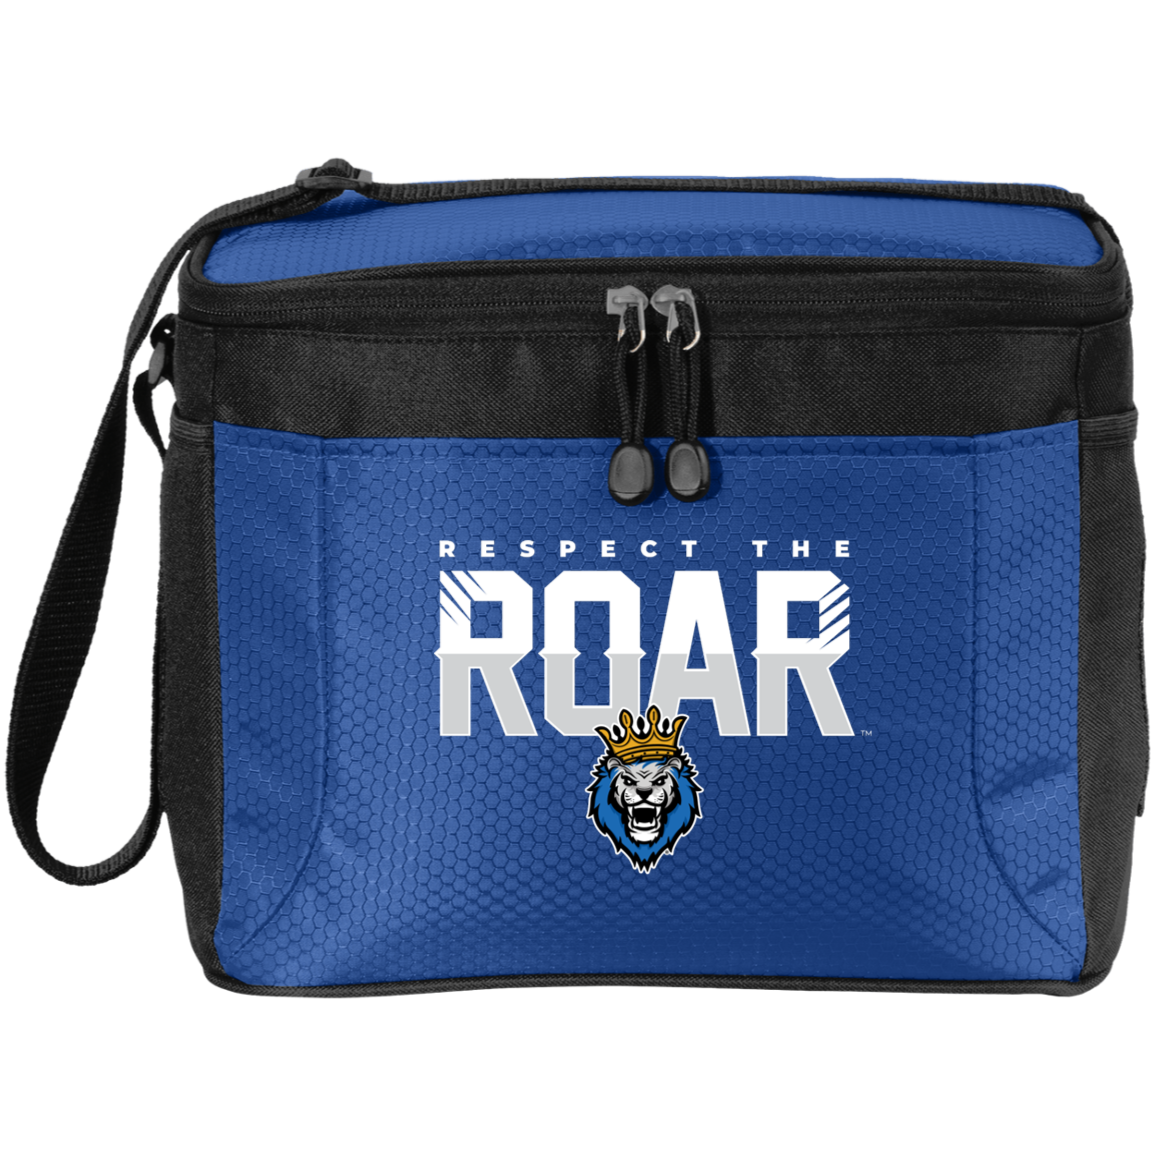 Respect The Roar - BG513 12-Pack Cooler